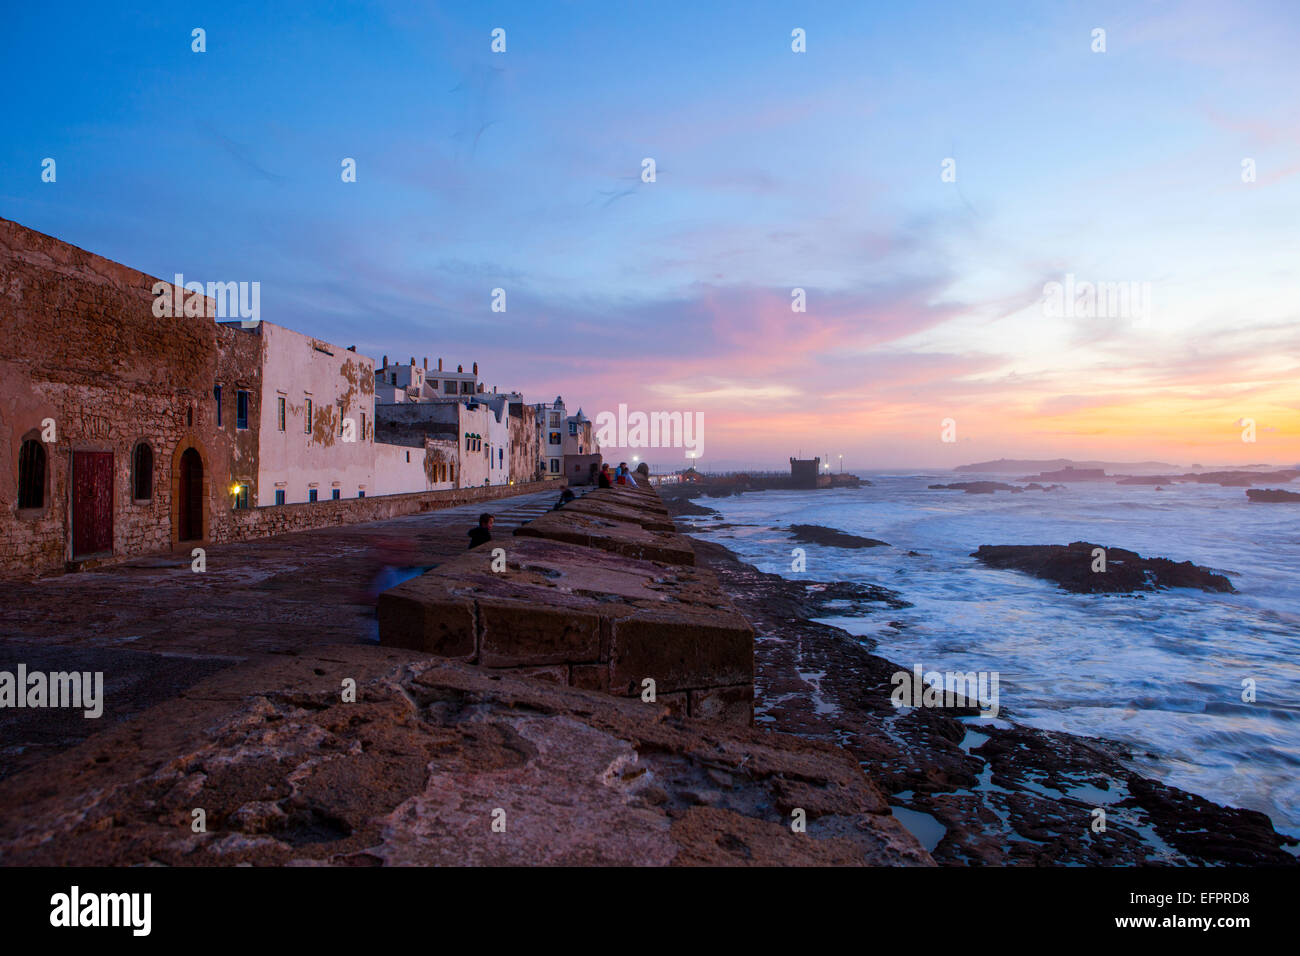 Les murs de la ville et le bord de mer au coucher du soleil, Essaouira, Maroc Banque D'Images